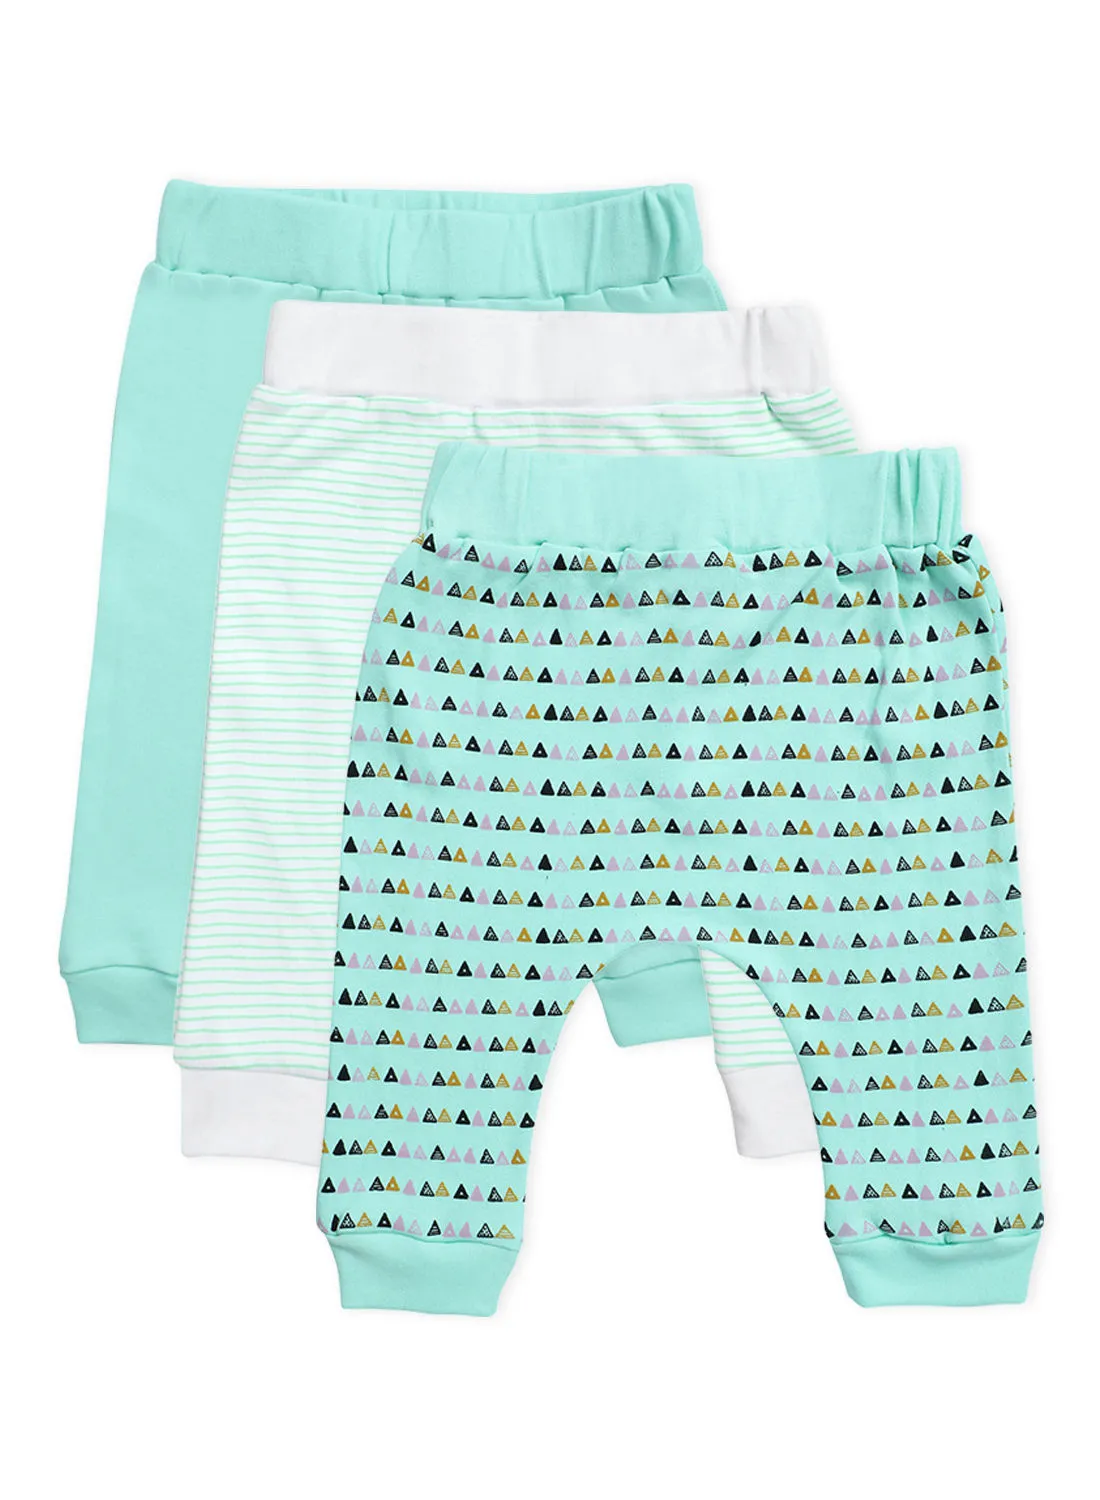 Bebi Baby Boys 3-Piece Cotton Diaper Pants Set Green/White